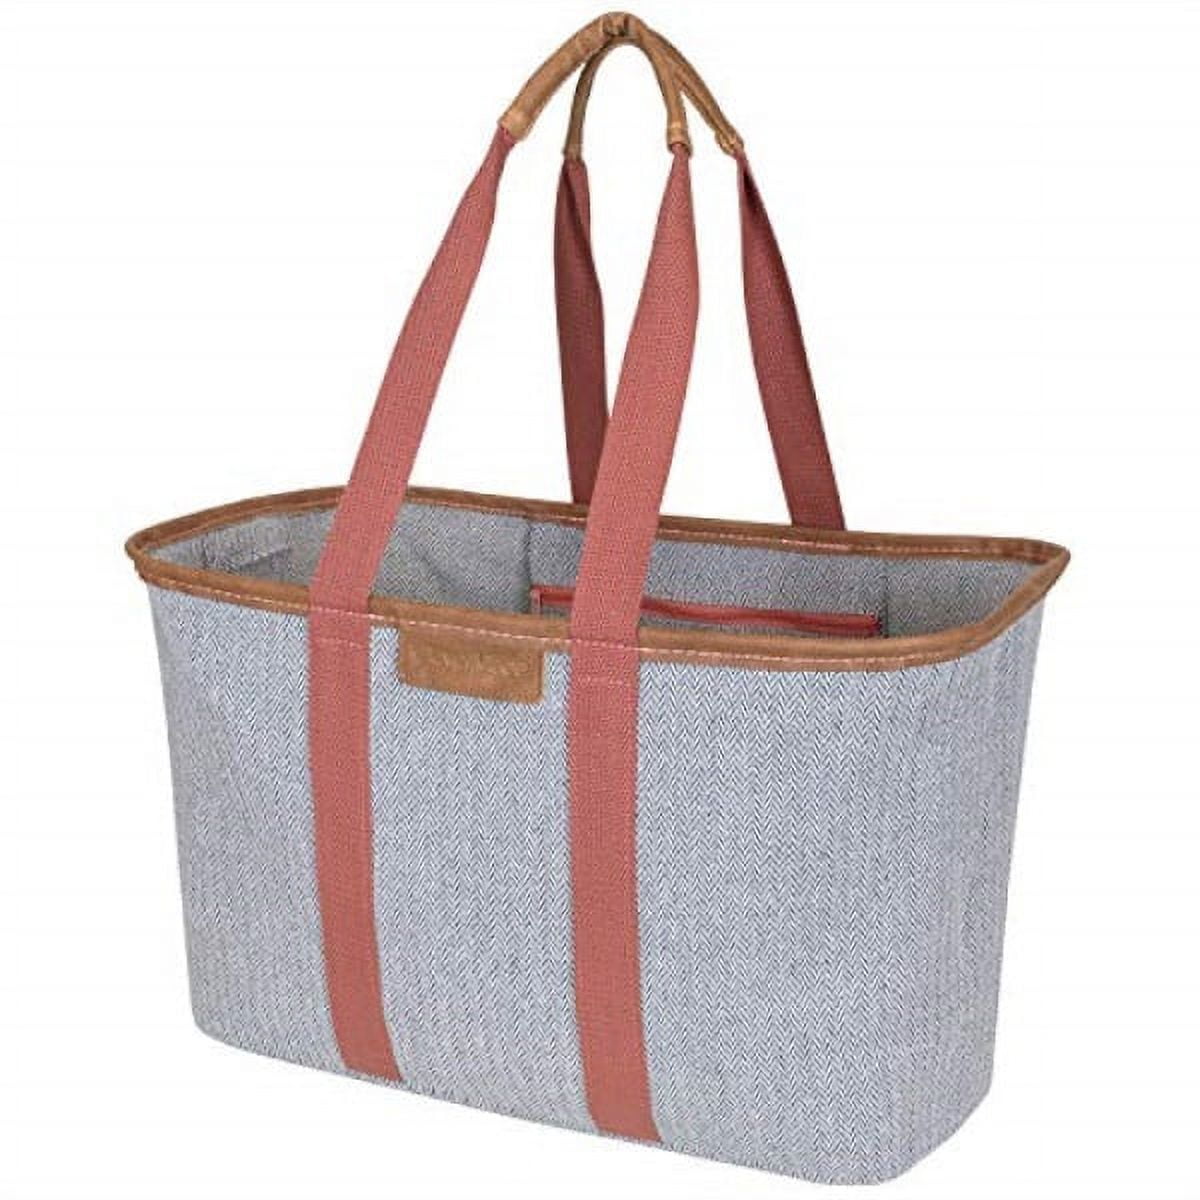 DIY Hobo Bag - Blank Tote Bags - Crafts & Hobbies